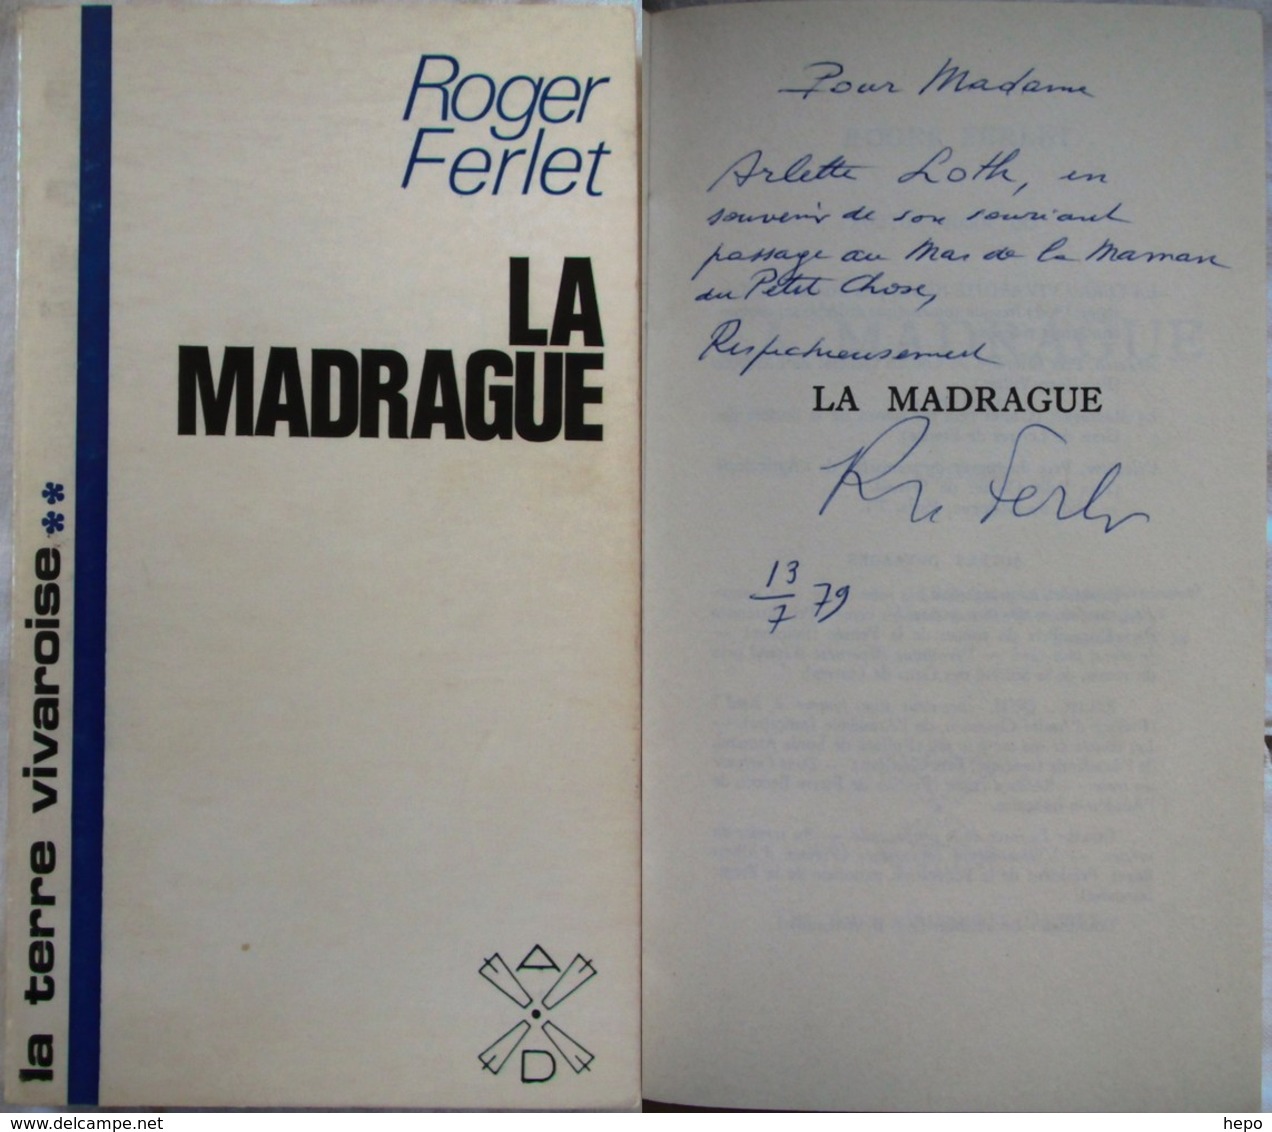 Ferlet Roger - La Terre Vivaroise - Trilogie Ardesco - La Madrague - Valentine - Envoi Dedicace Autographe - Livres Dédicacés